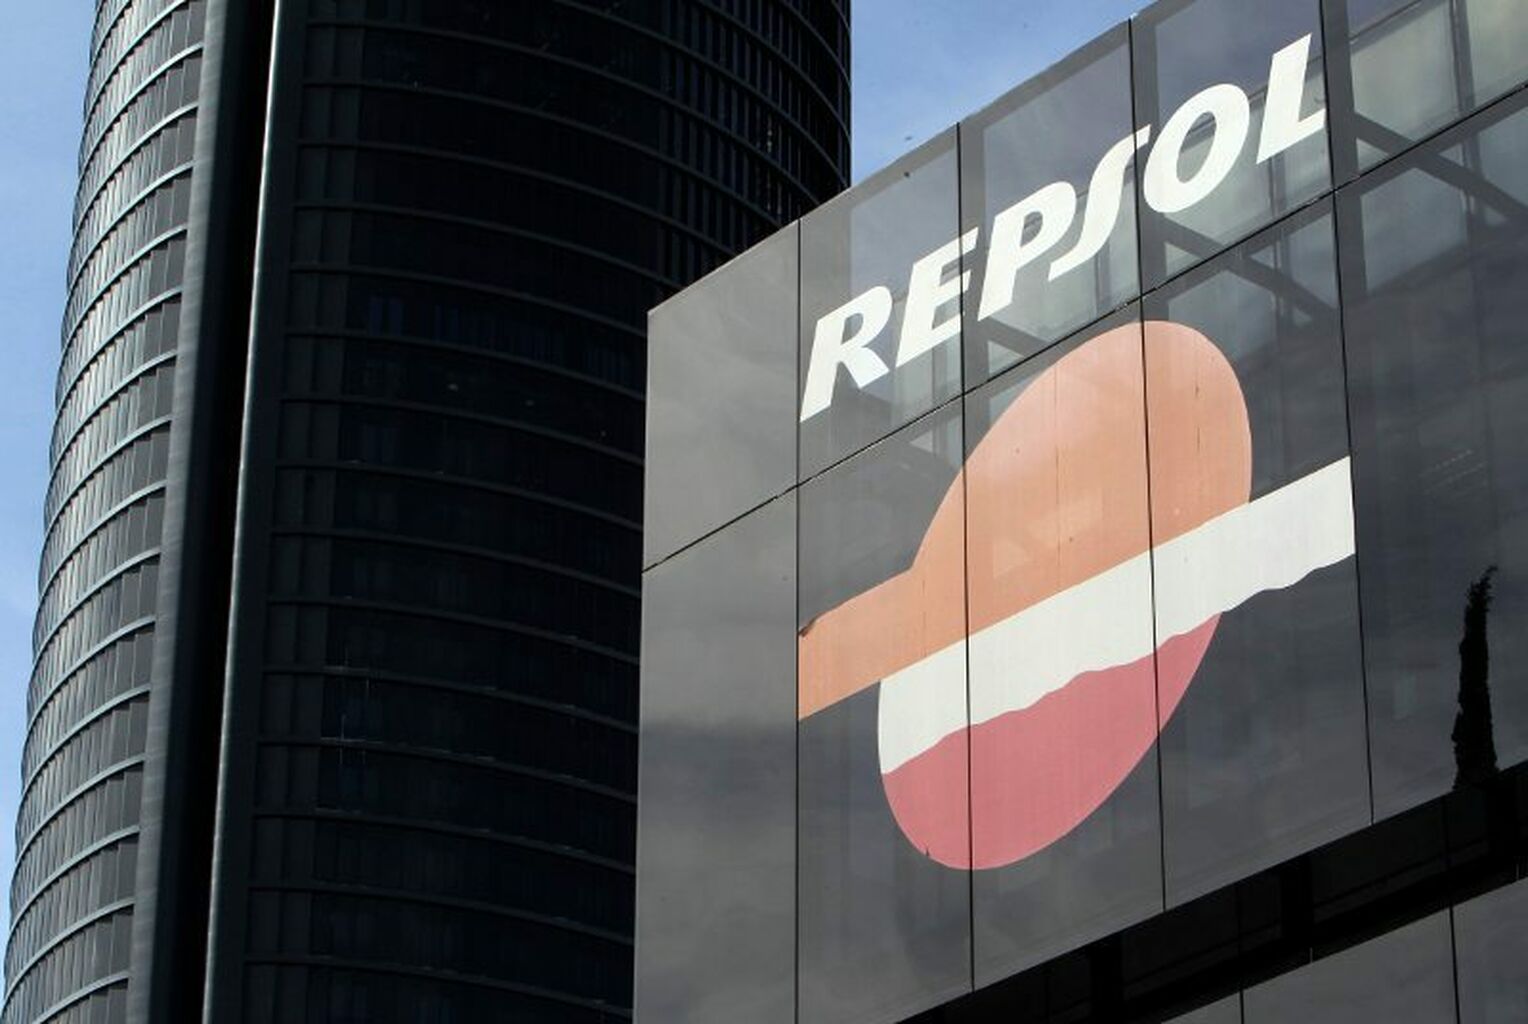 Repsol se revaloriza gracias al aumento del precio del petróleo